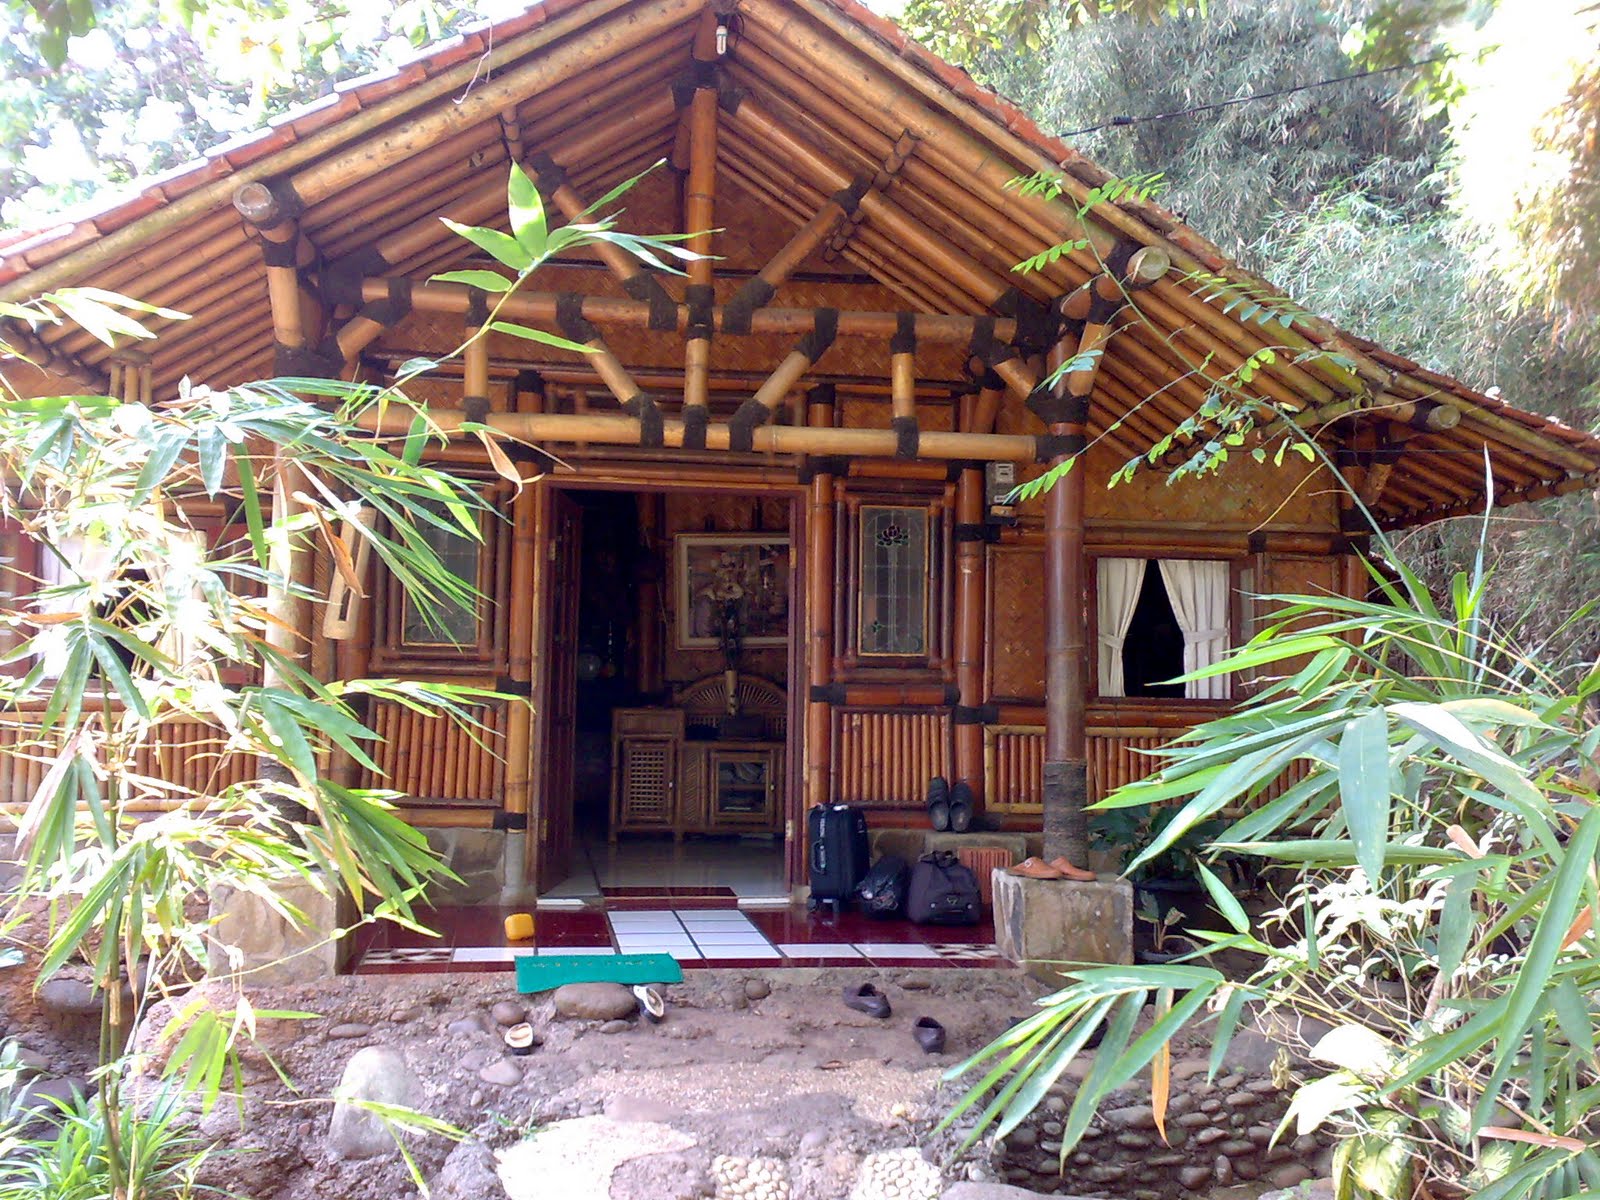 Rumah Bambu Sejuk Di Siang Hari